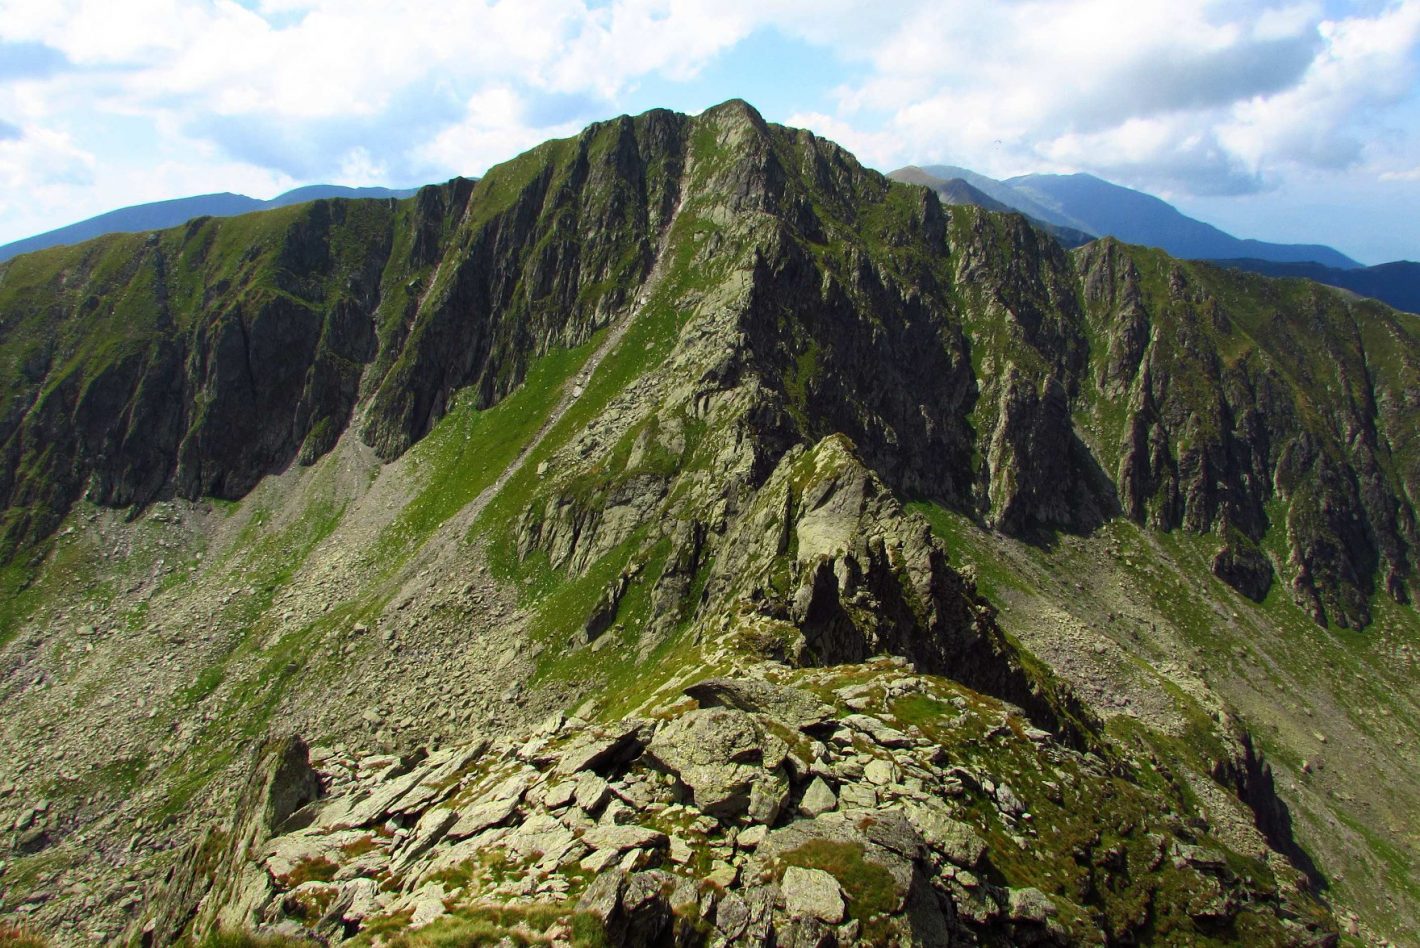 Mountain ridge in Fagaras mountains, Romania